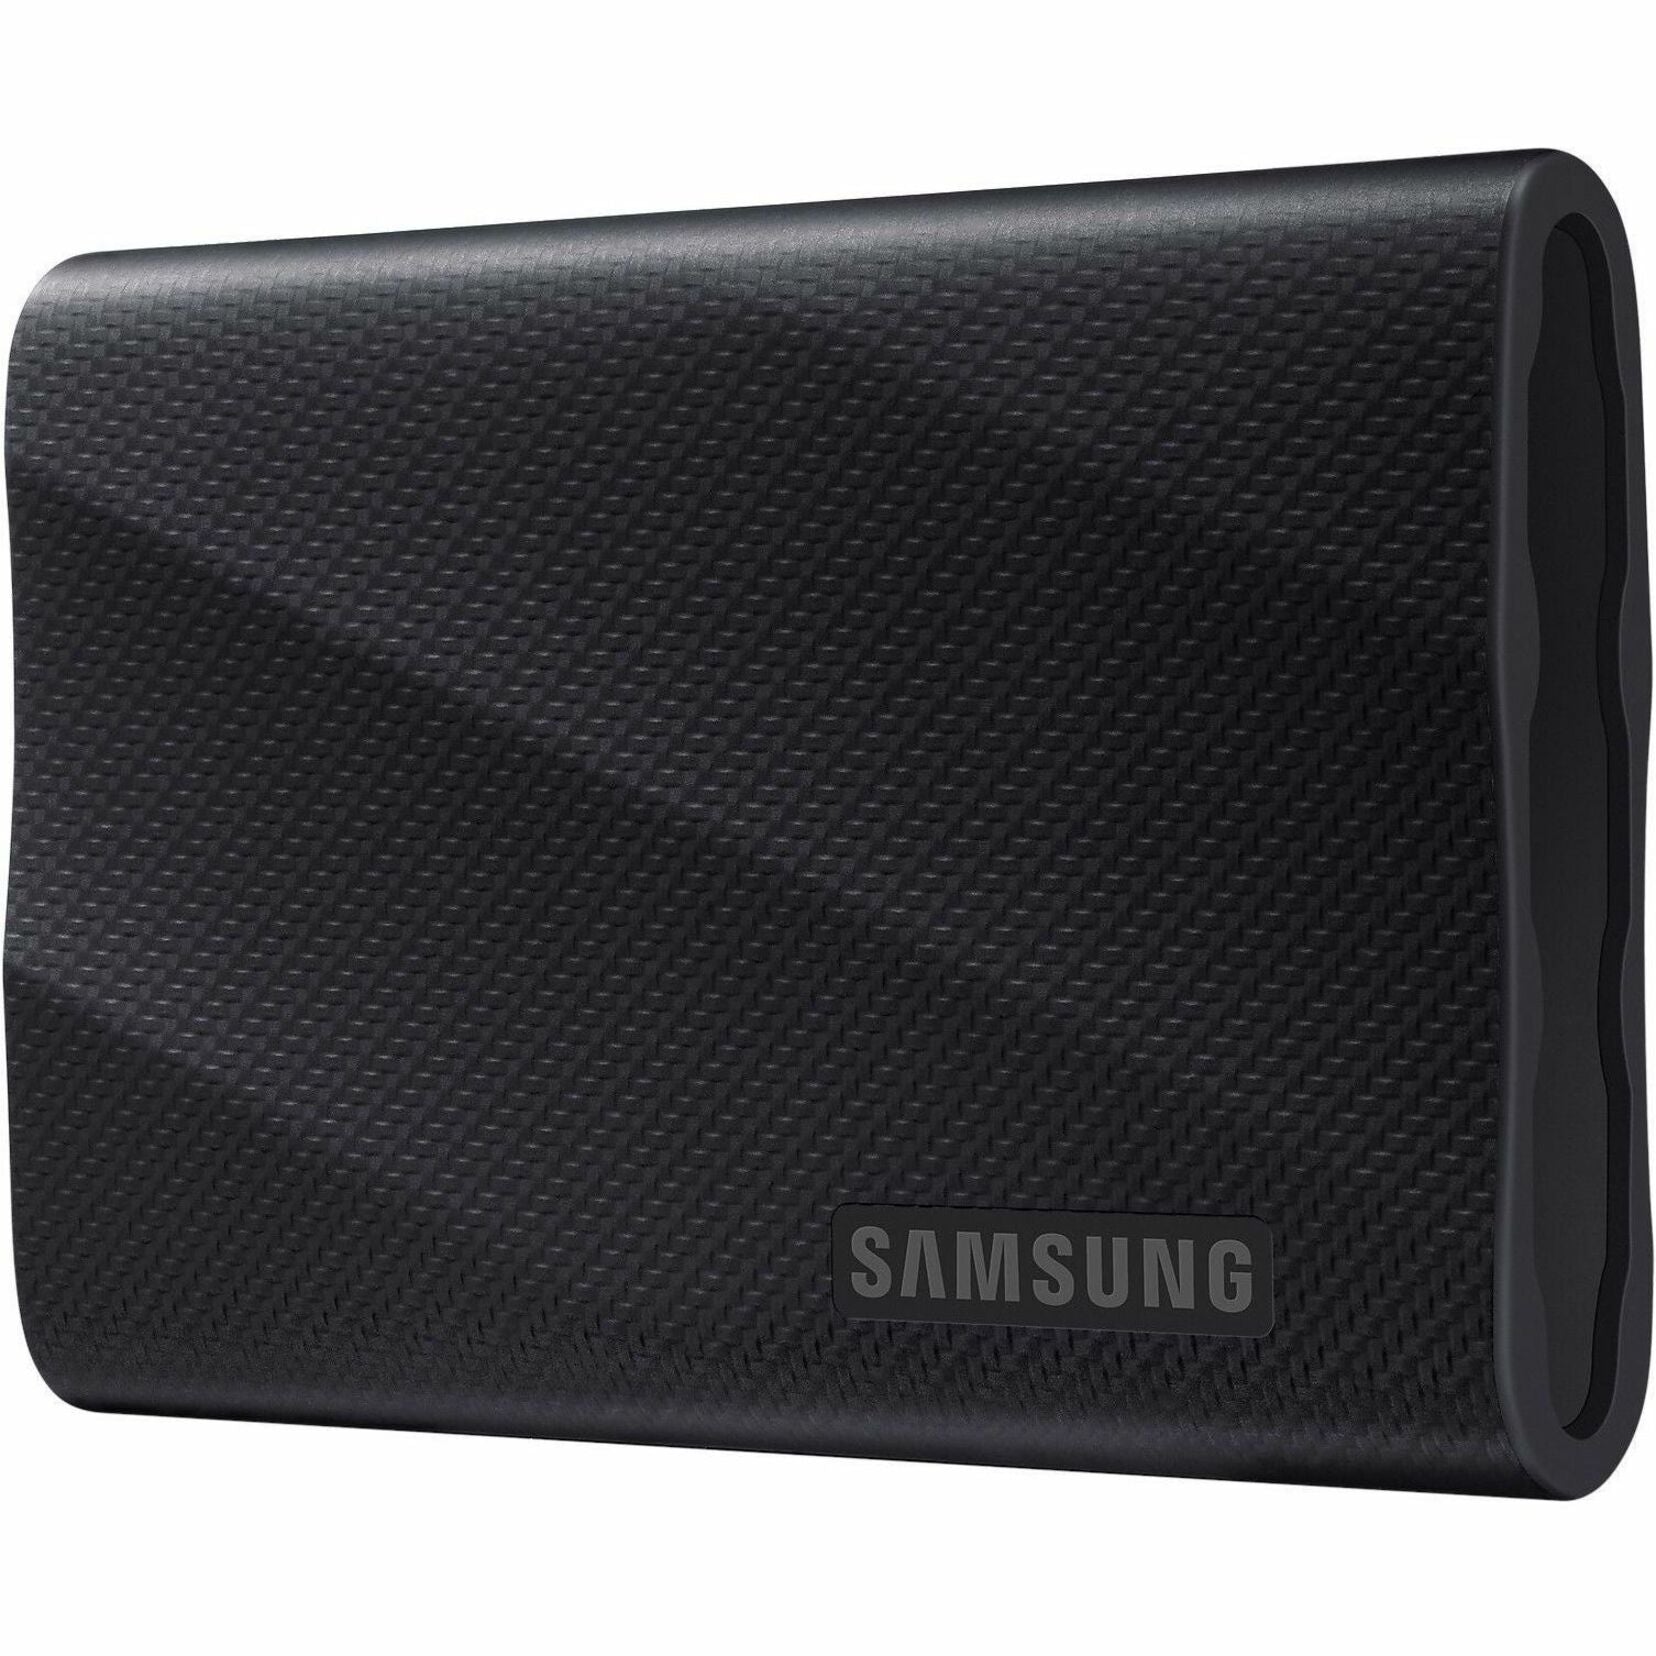 Samsung MU-PG2T0B/AM Portable SSD T9, 2TB, USB 3.2 (Gen 2), 2000 MB/s Read, 1950 MB/s Write